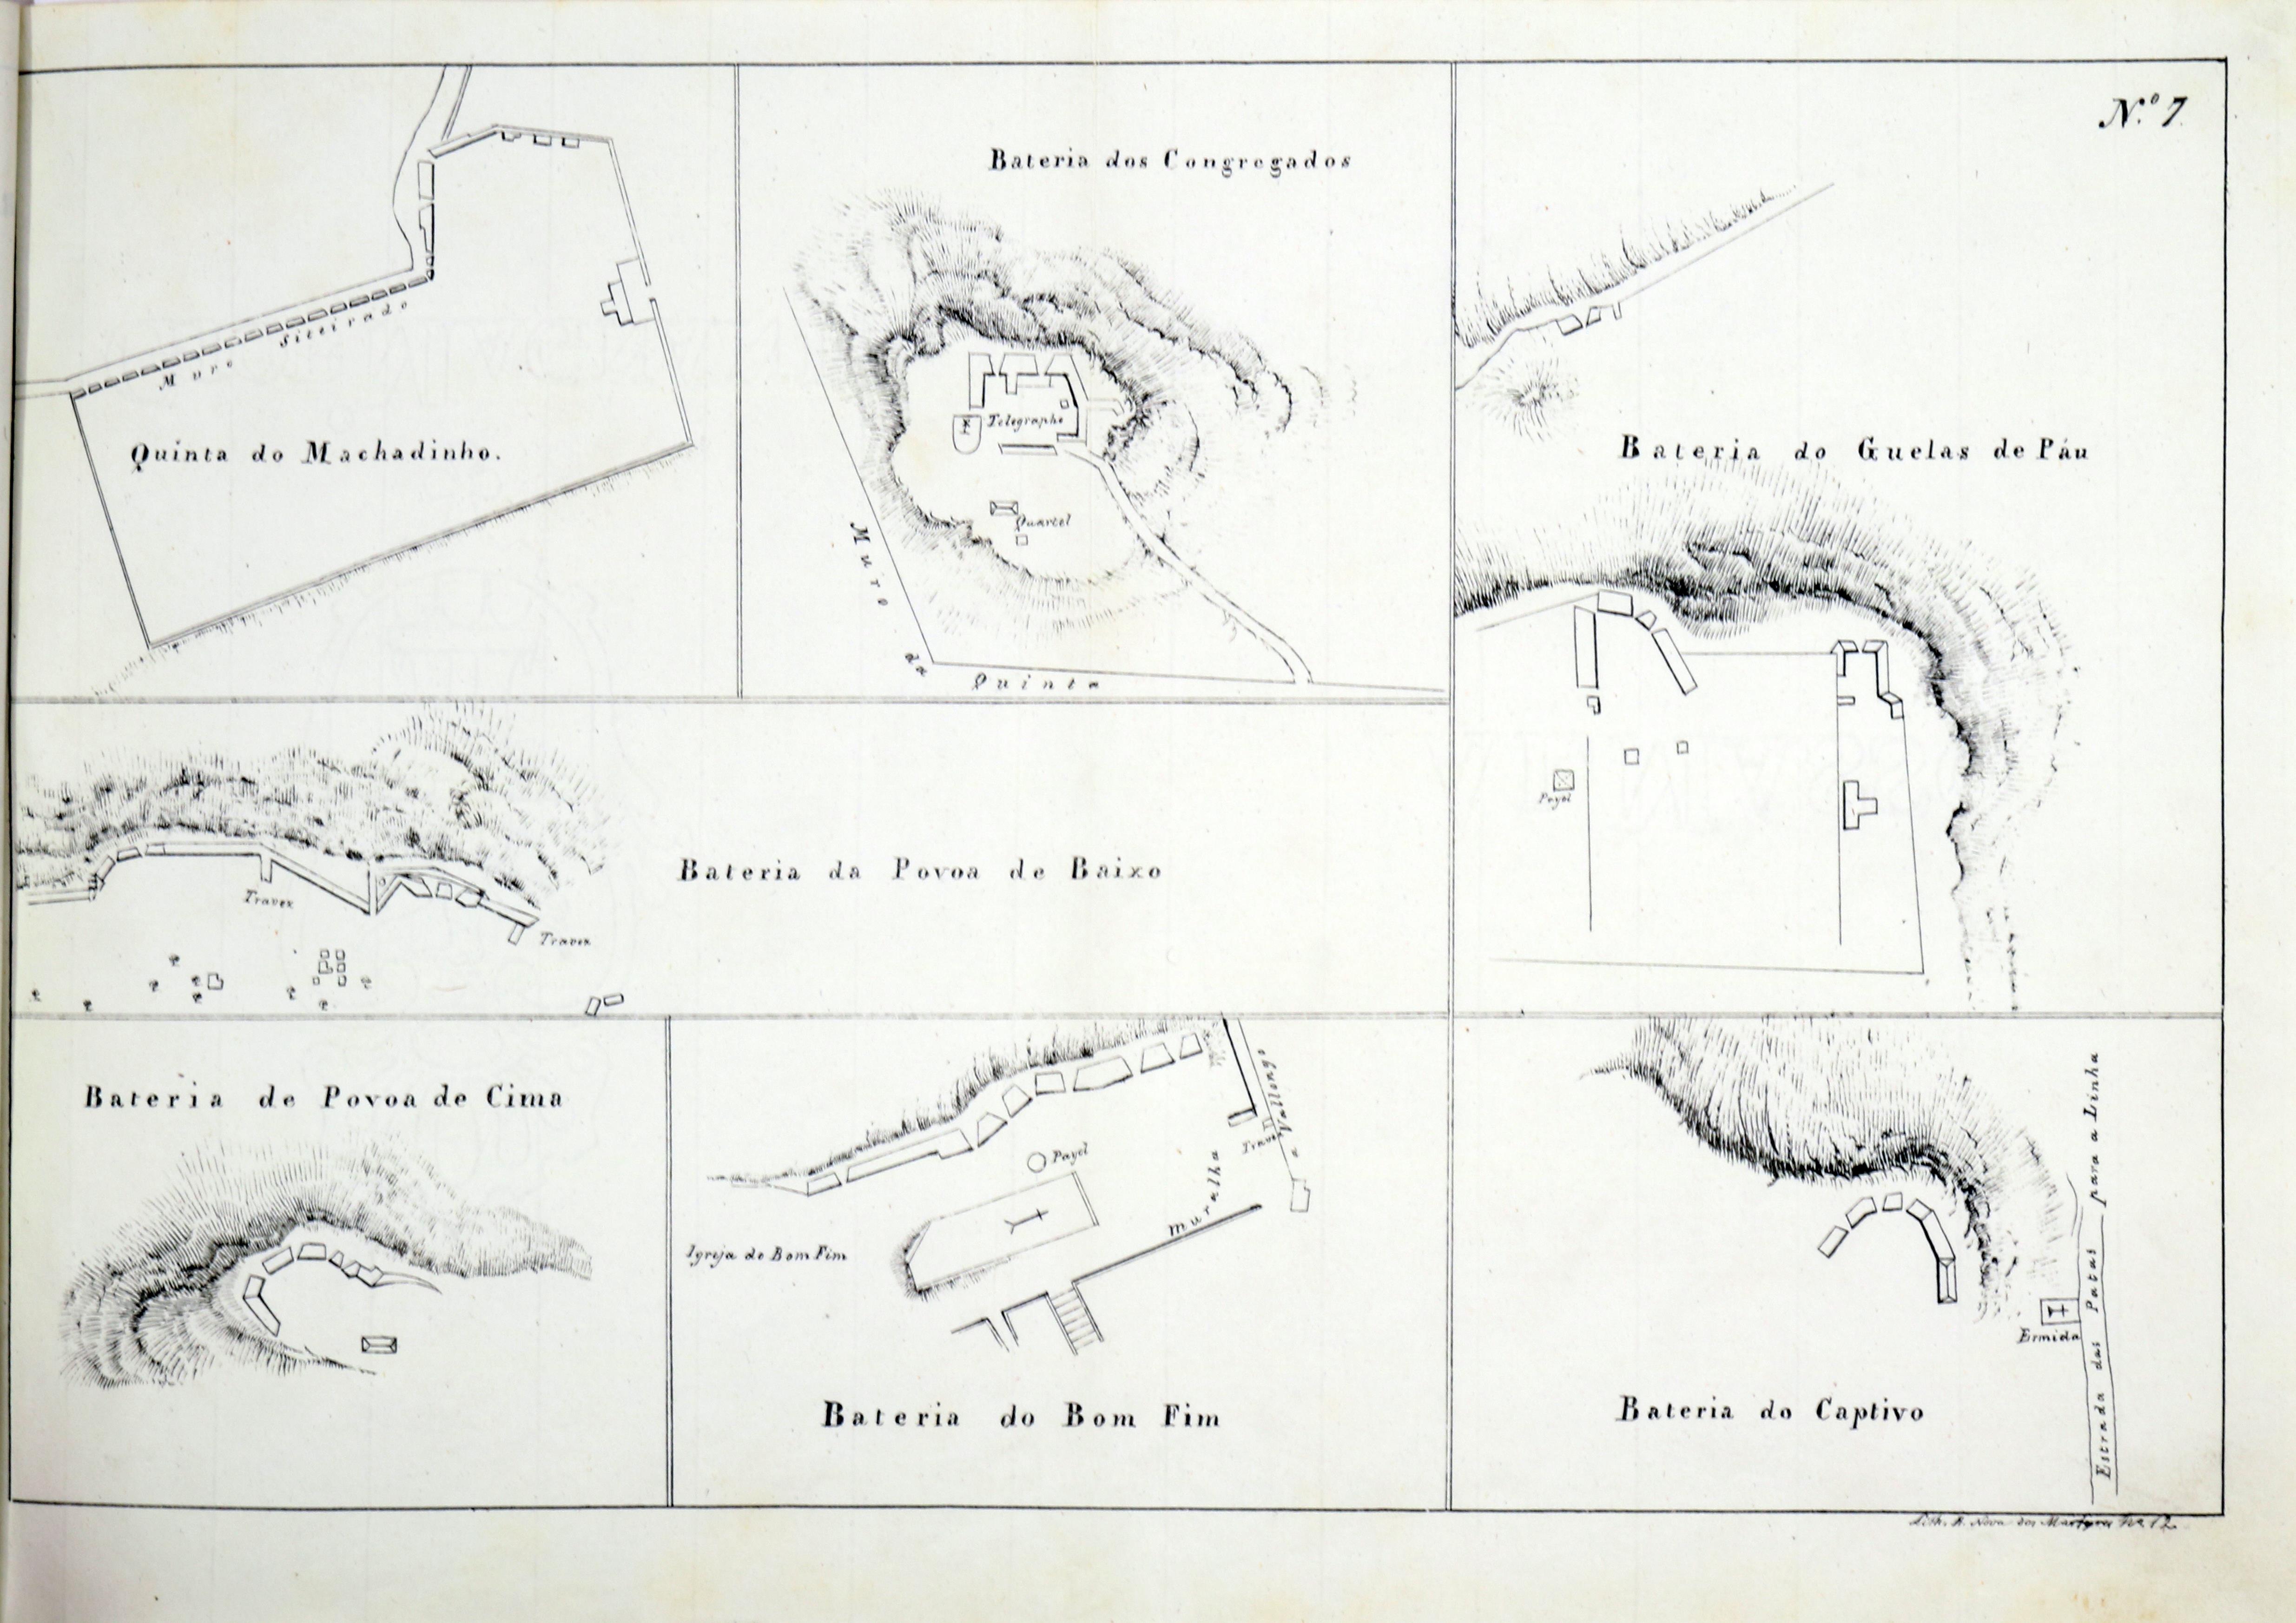 Coleção de plantas e perfis das fortificações, referidas à carta geral das linhas dos exércitos libertador e rebelde, no sítio do Porto